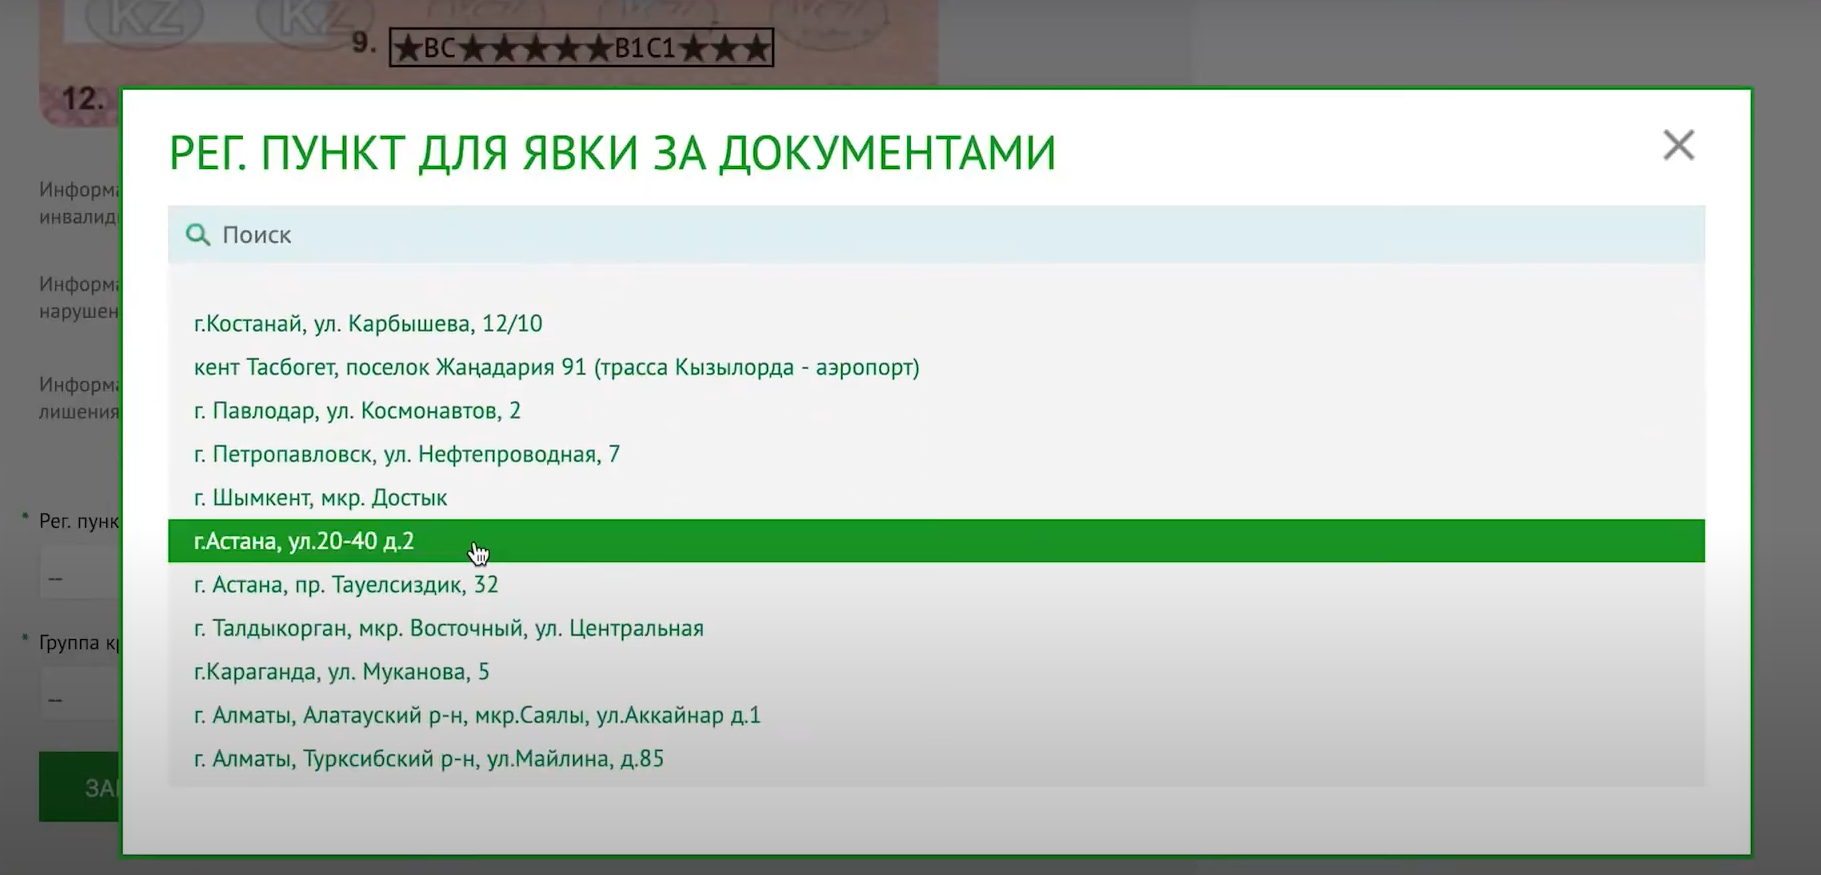 Замена водительского удостоверения онлайн через Egov.kz - инструкция